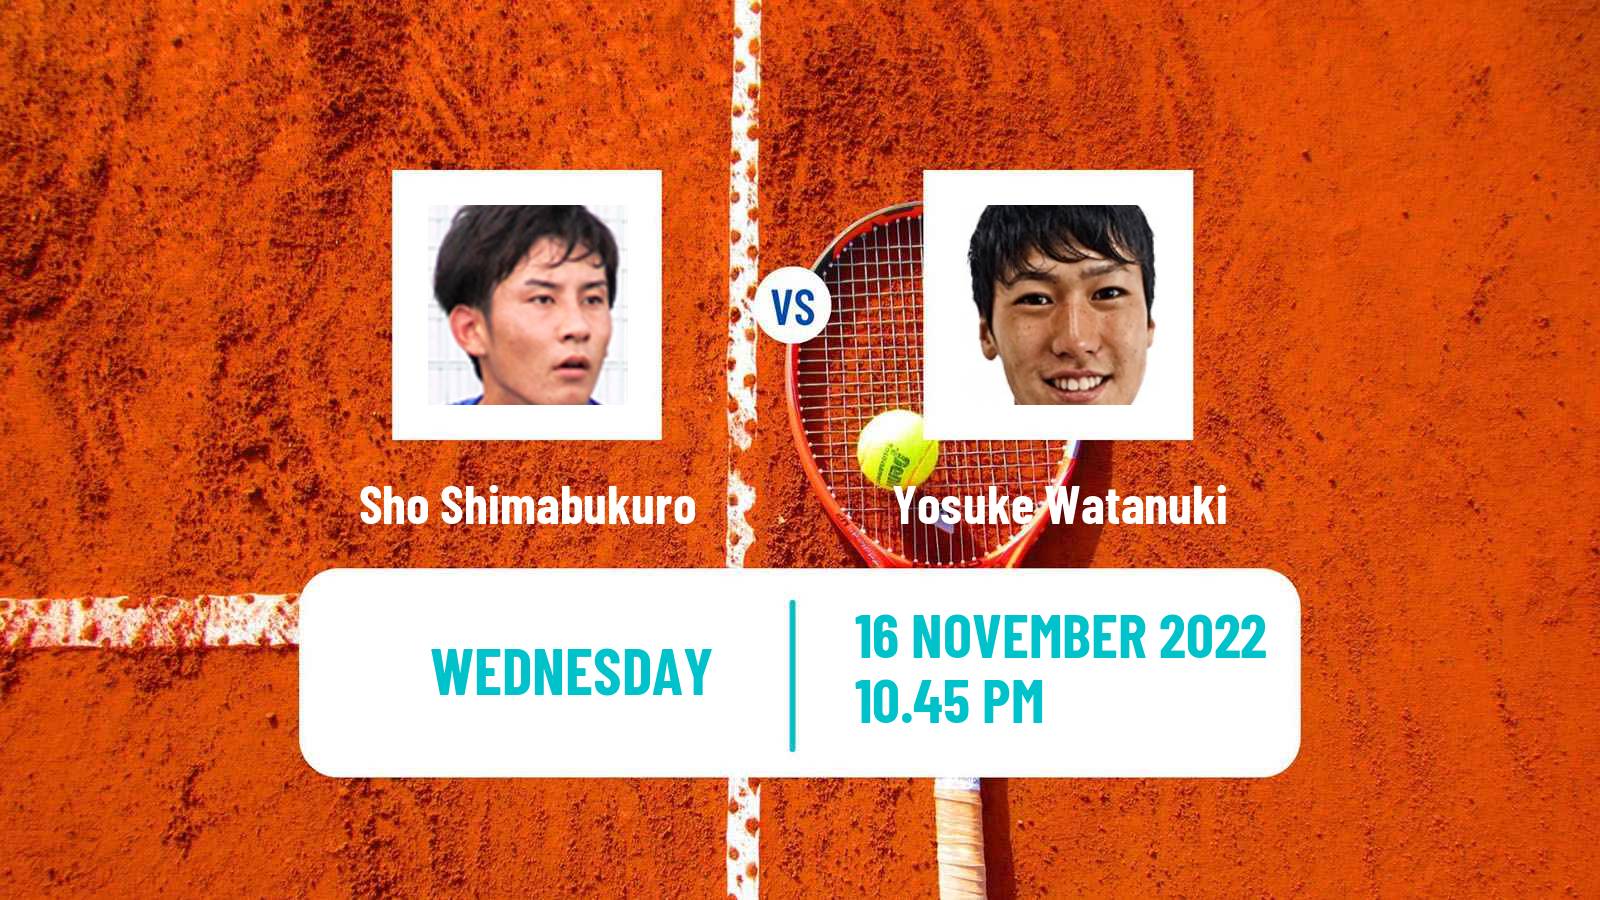 Tennis ATP Challenger Sho Shimabukuro - Yosuke Watanuki